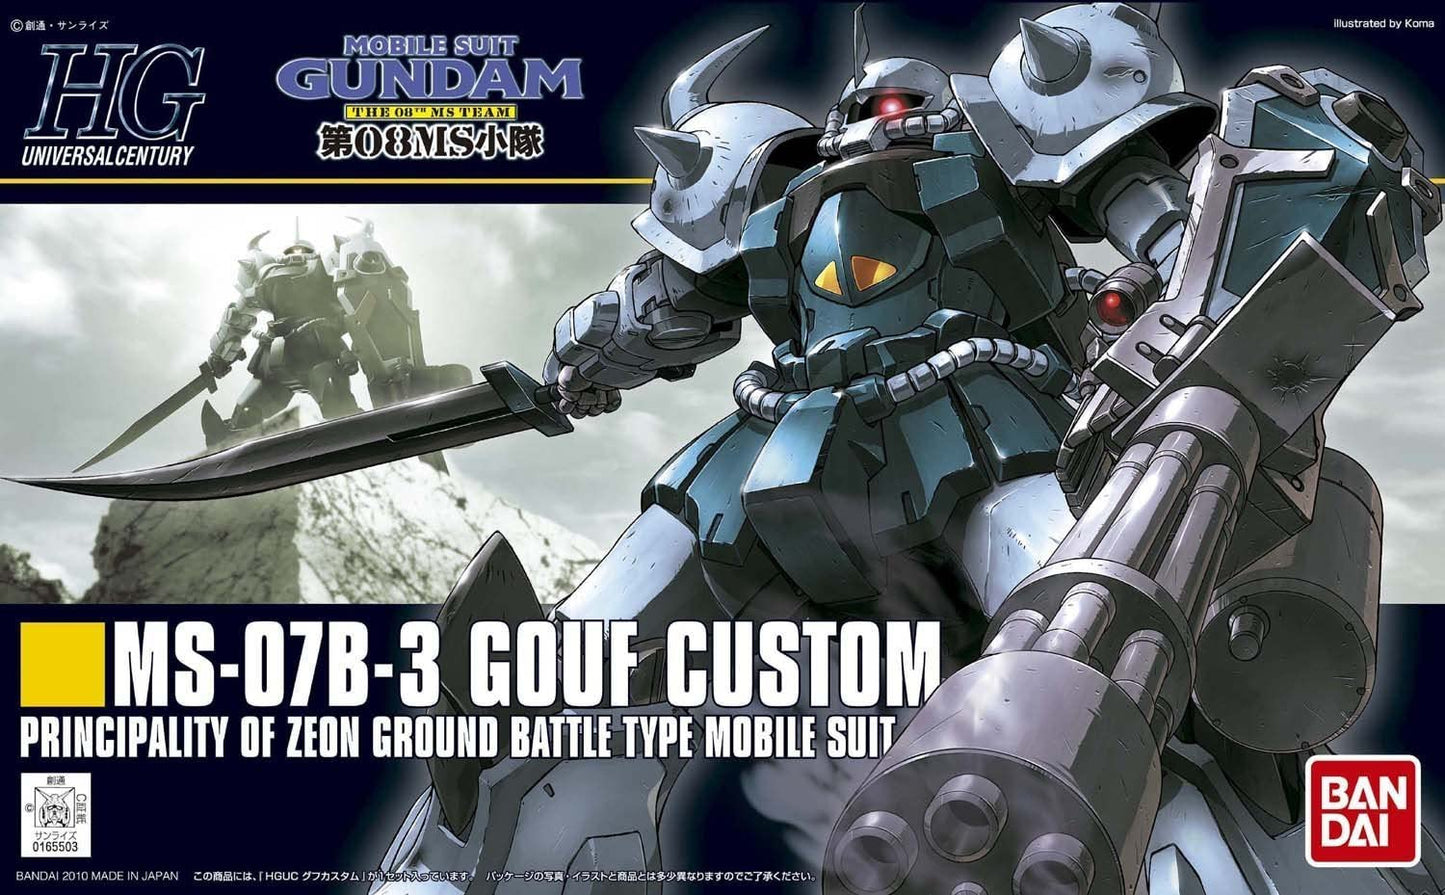 HGUC Gundam #117 MS-07B-3 Gouf Custom Mode Kit 1/144